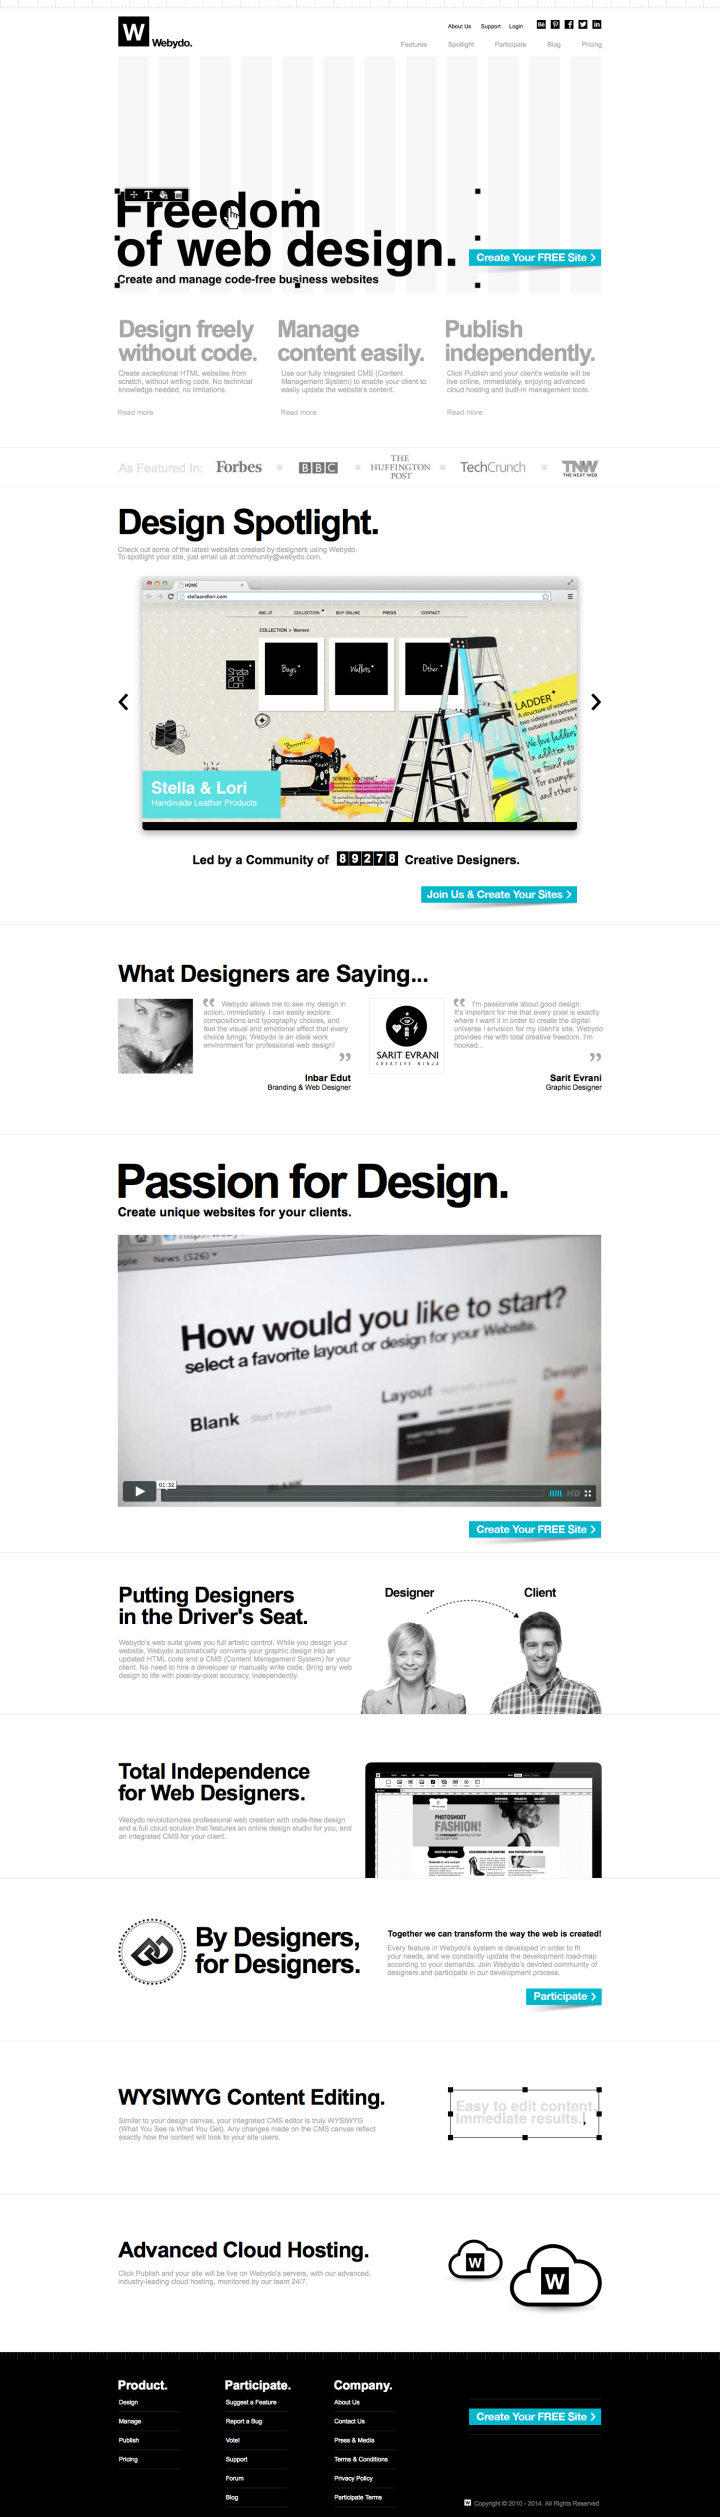 Professional Website Design Software for Designers | Create a Website | Webydo